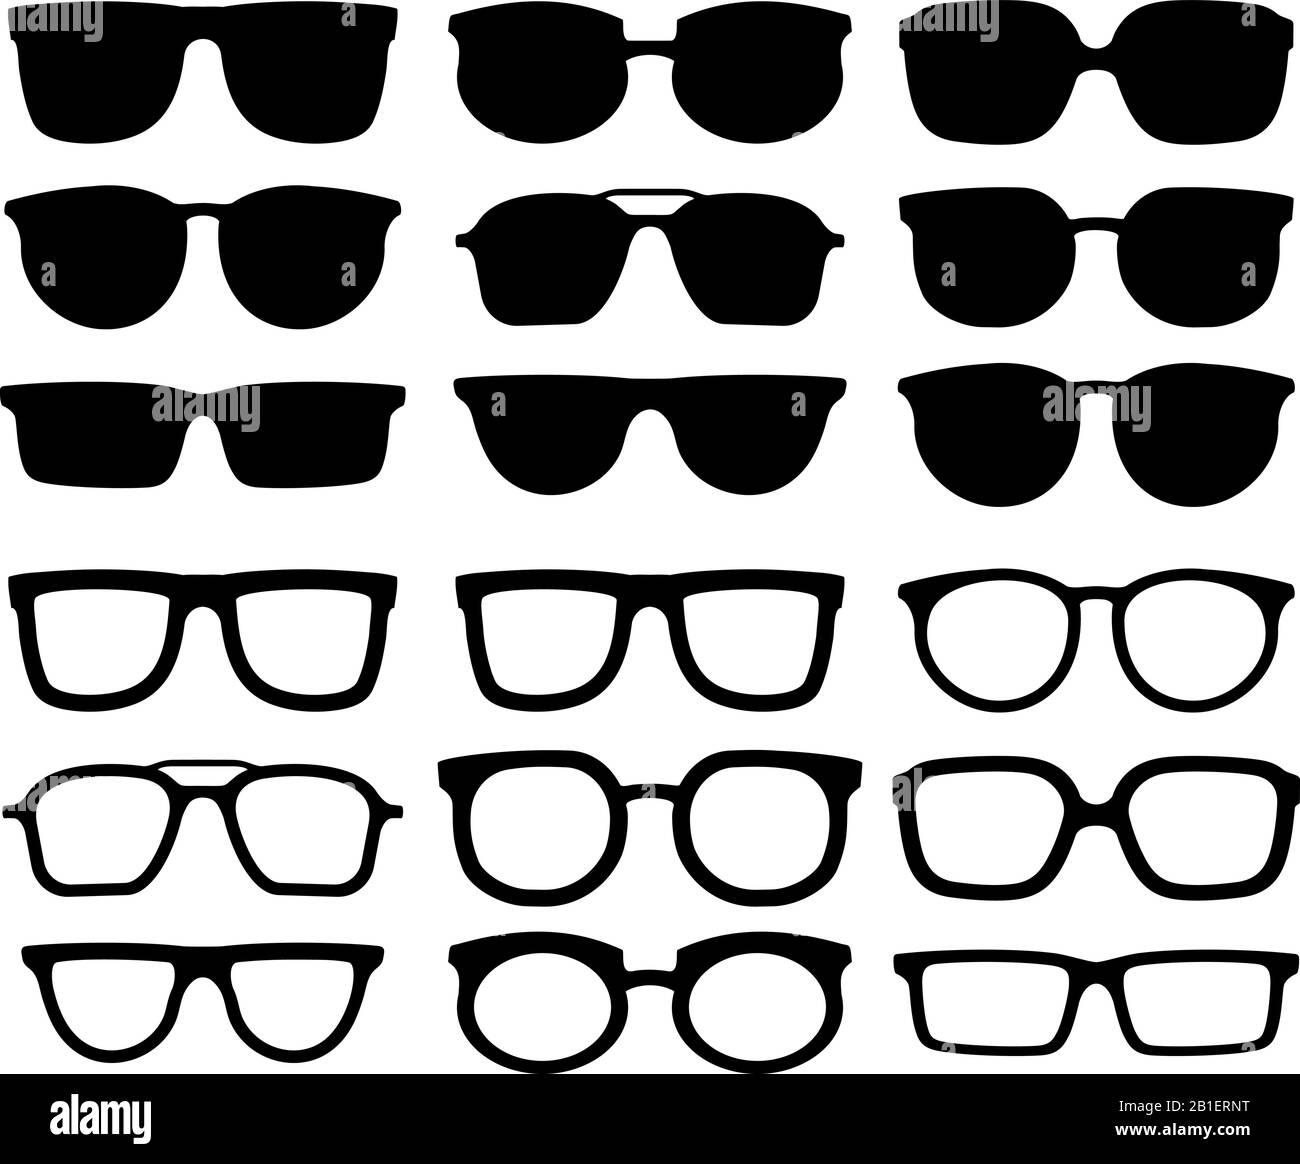 Silhouette des lunettes. Lunettes de vue geek, lunettes de soleil fraîches et lunettes de vue silhouettes collection vectorielle Illustration de Vecteur